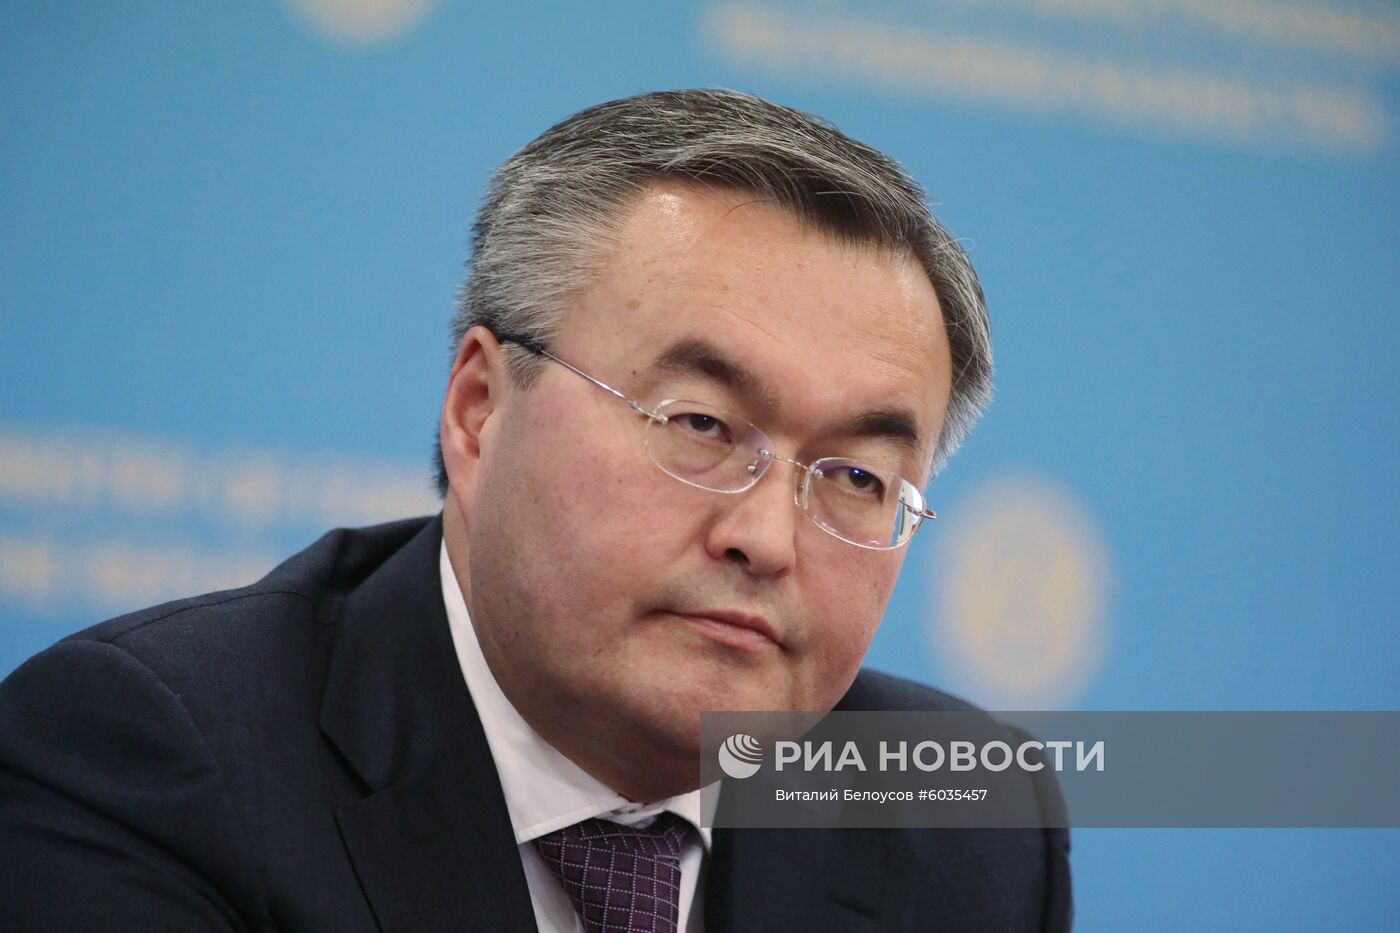 Визит министра иностранных дел РФ С. Лаврова в Казахстан